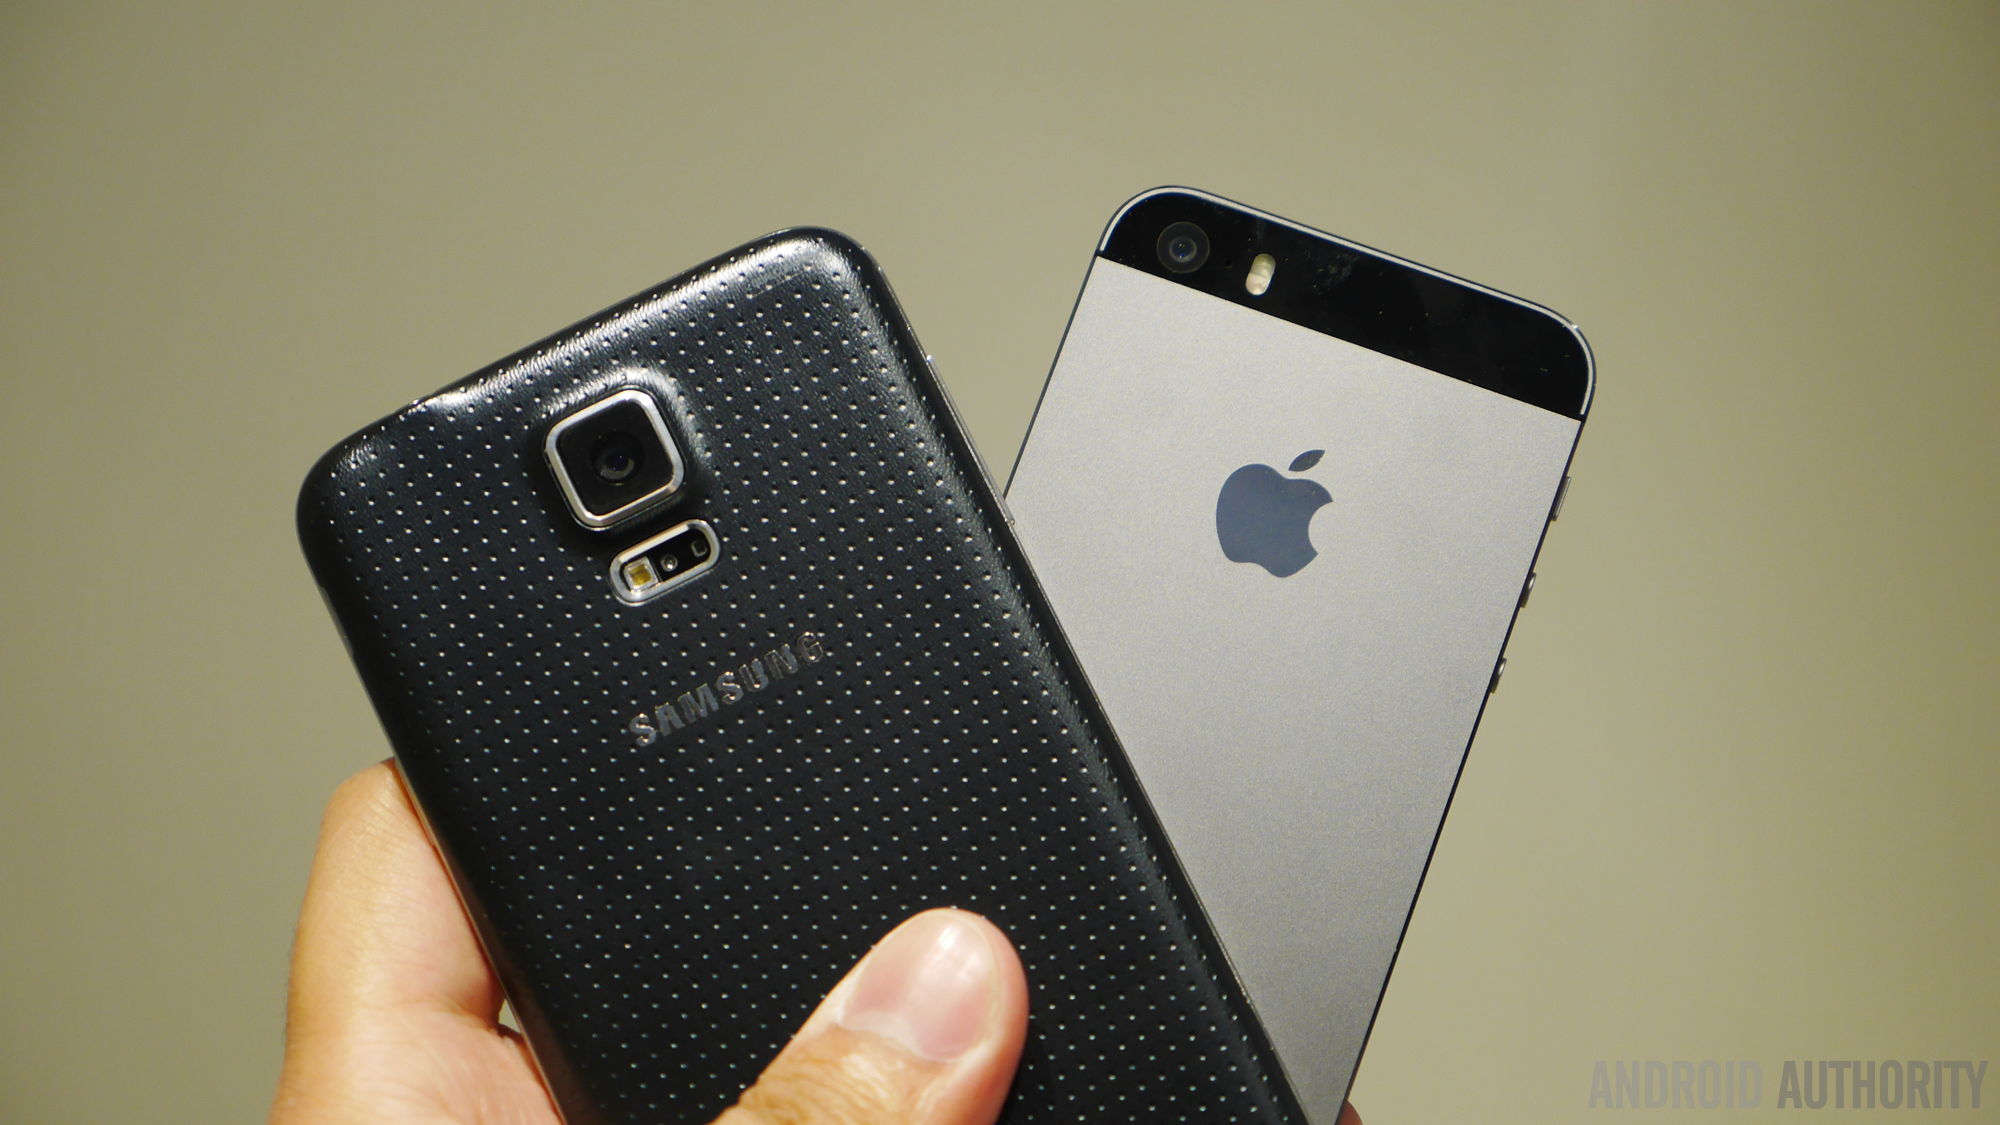 Samsung galaxy s5 vs iphone 5s aa 3